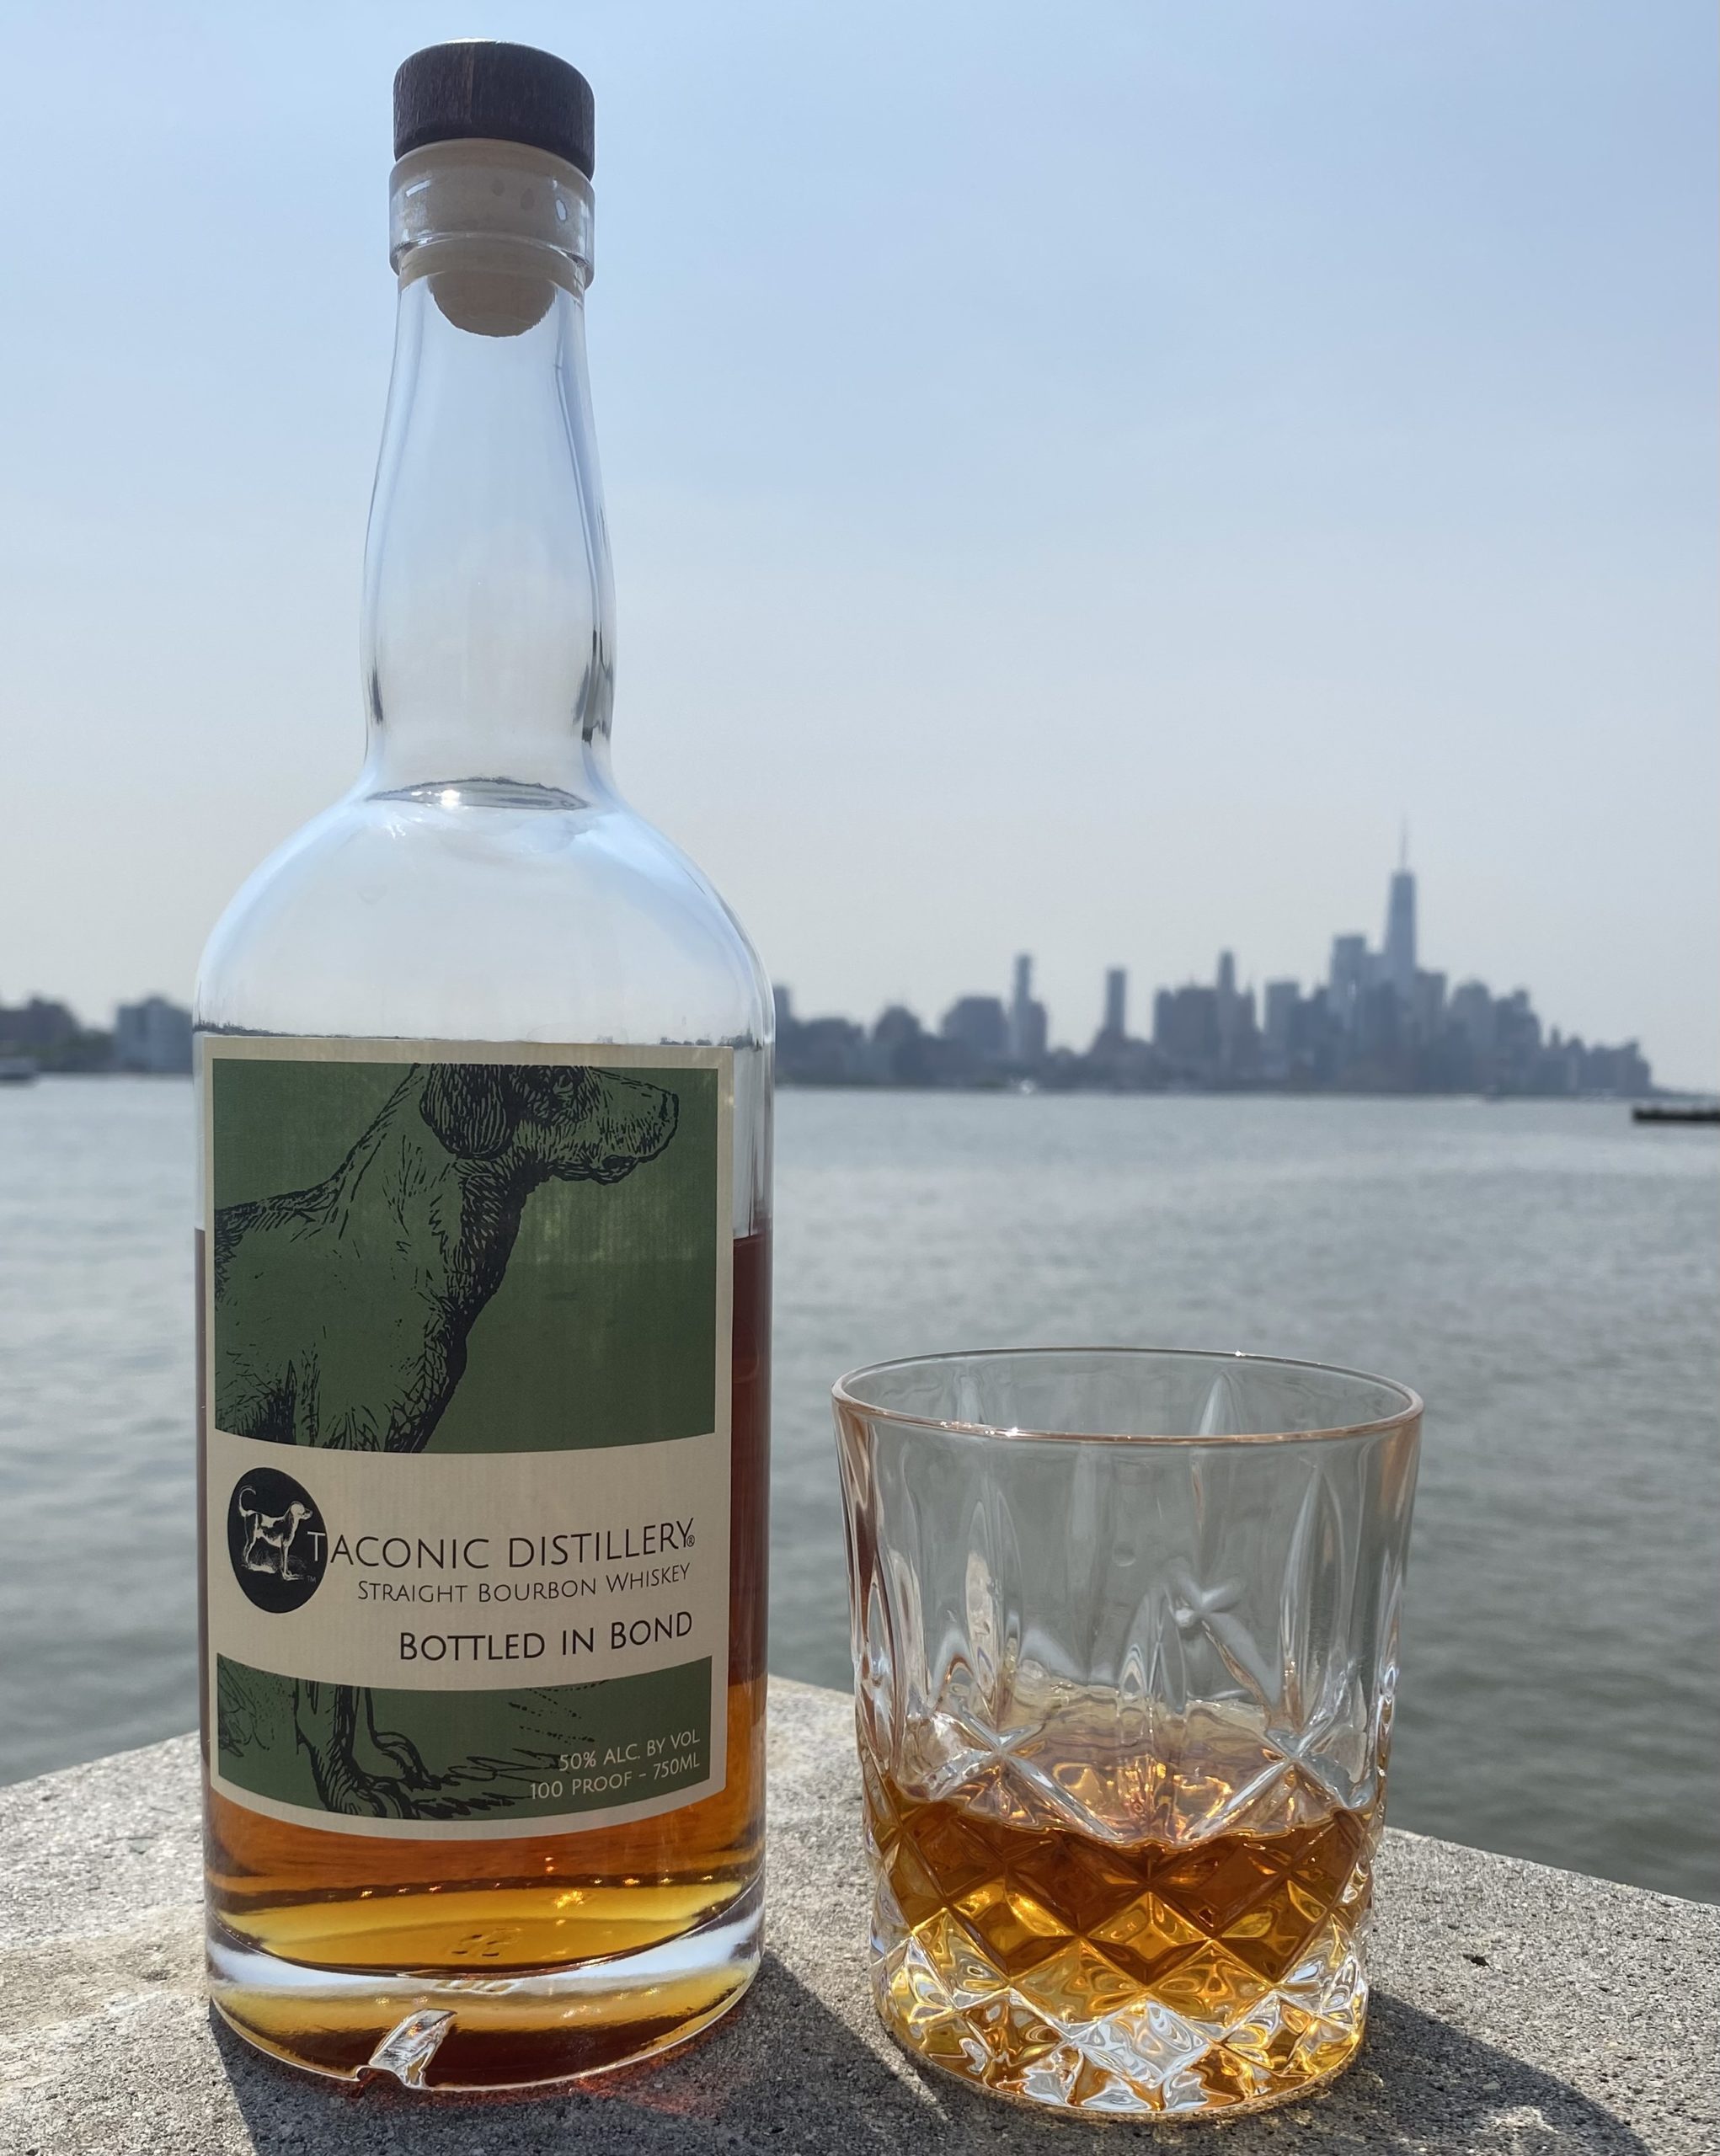 Taconic Straight Bourbon Whiskey – Bottled in Bond 